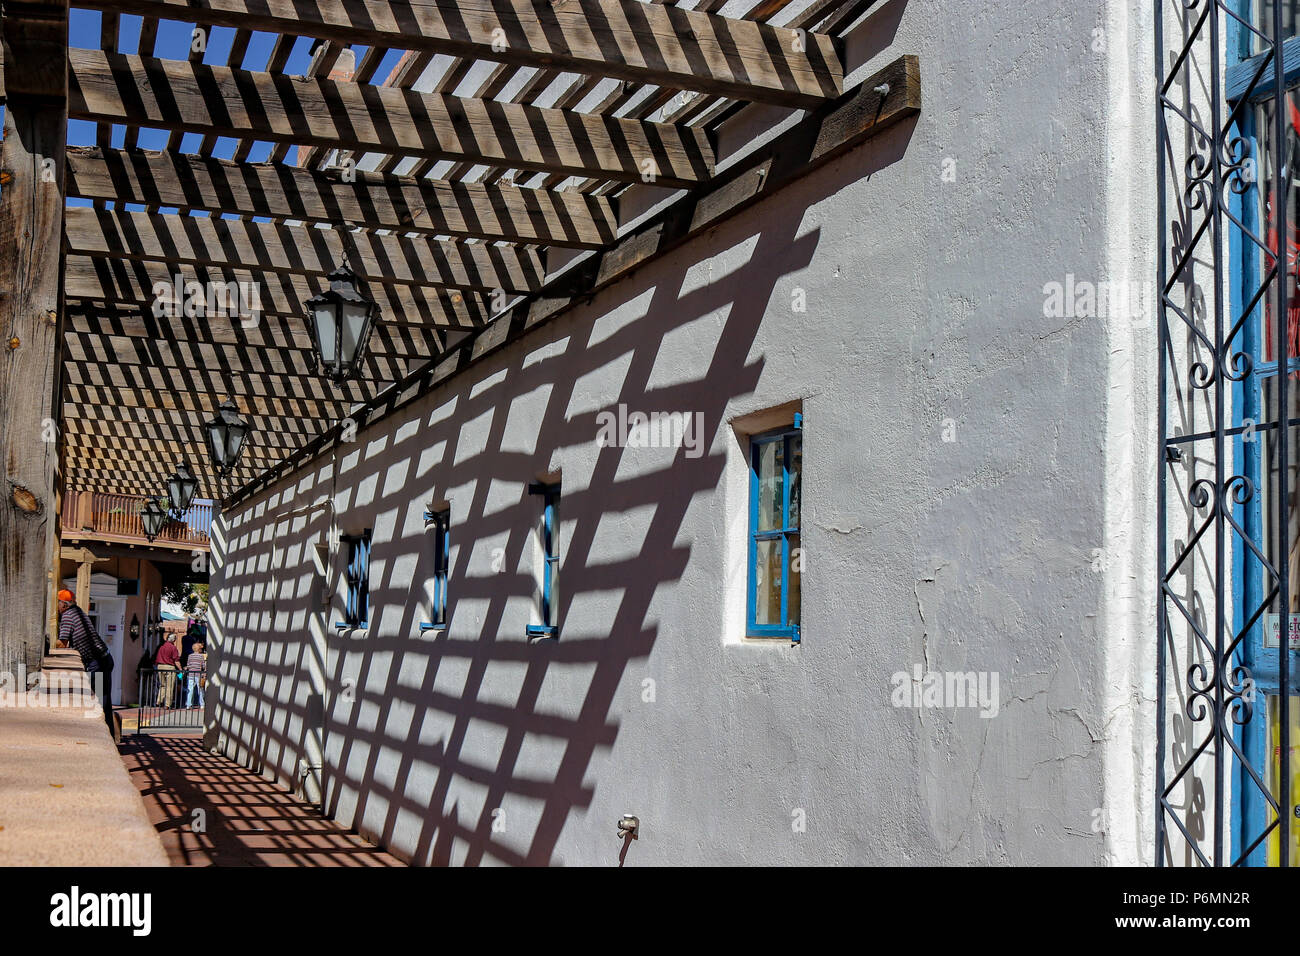 Les ombres et les trottoirs. Le treillis en bois diffusent une ombre contre le mur d'adobe le long d'un trottoir situé dans la vieille ville d'Albuquerque au Nouveau Mexique Banque D'Images